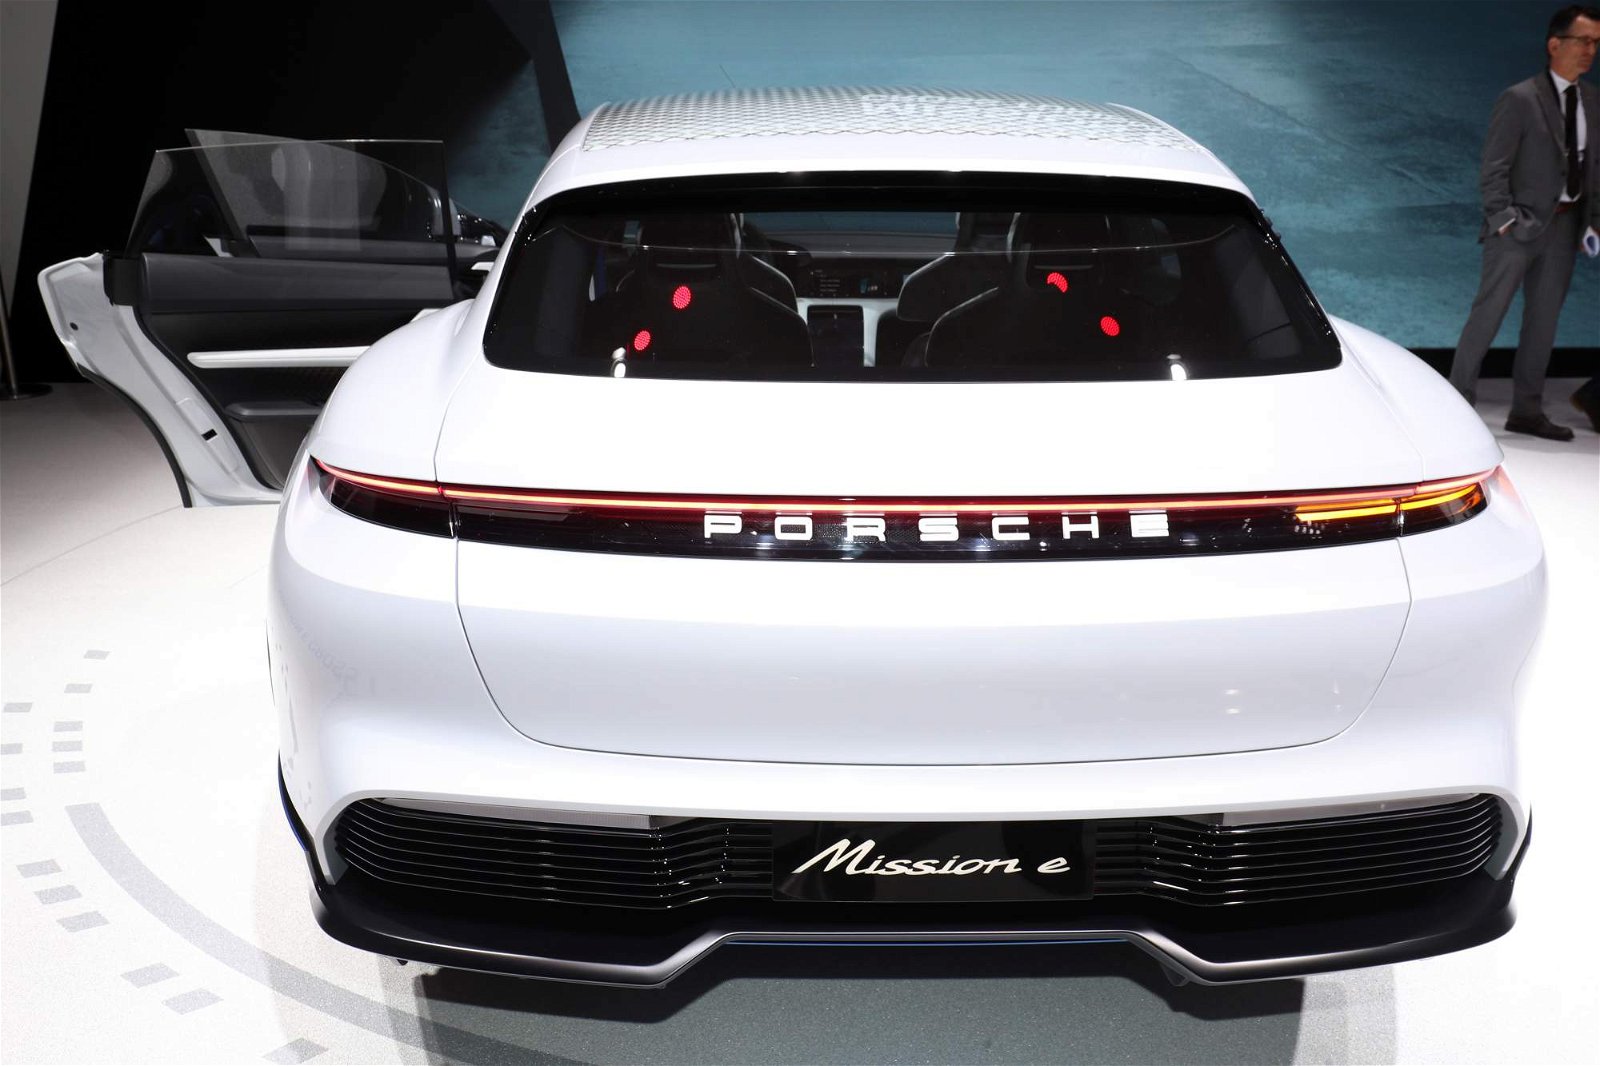 Porsche-Mission-E-Cross-Turismo-Concept-at-Geneva-Motor-Show-11